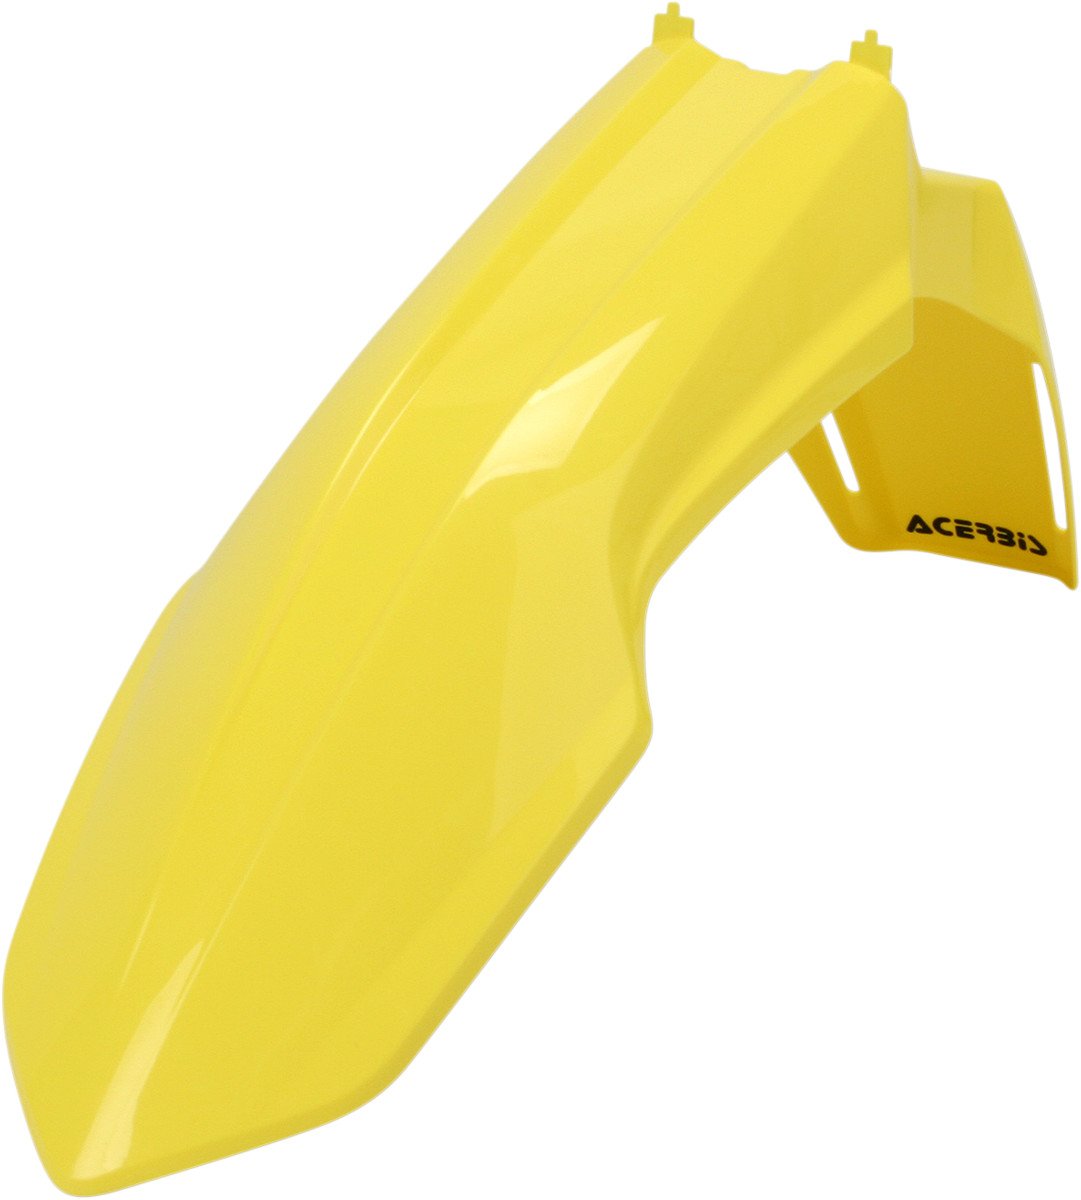 Acerbis Kotflügel vorne für 08-17 Suzuki RMZ450, gelb, 2113640231, OSFA von Acerbis